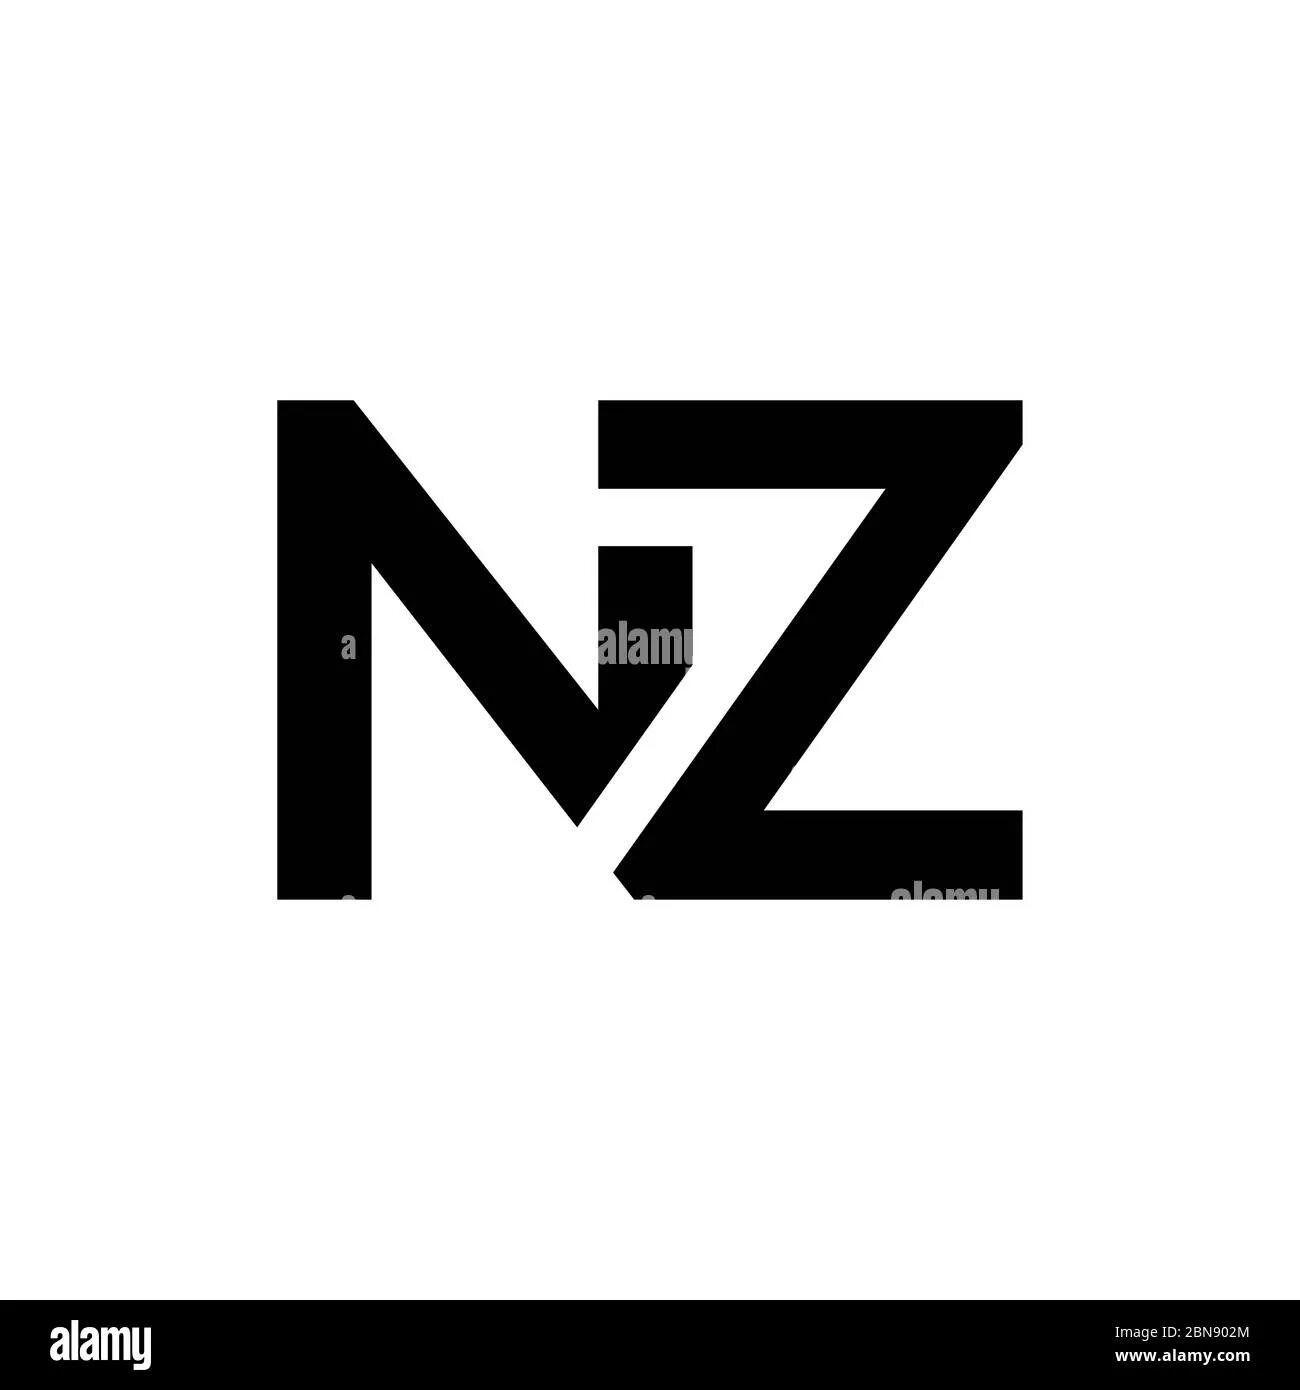 M n z 5. НЗ лого. Z логотип. Буквы НЗ. Логотип с буквами nz.